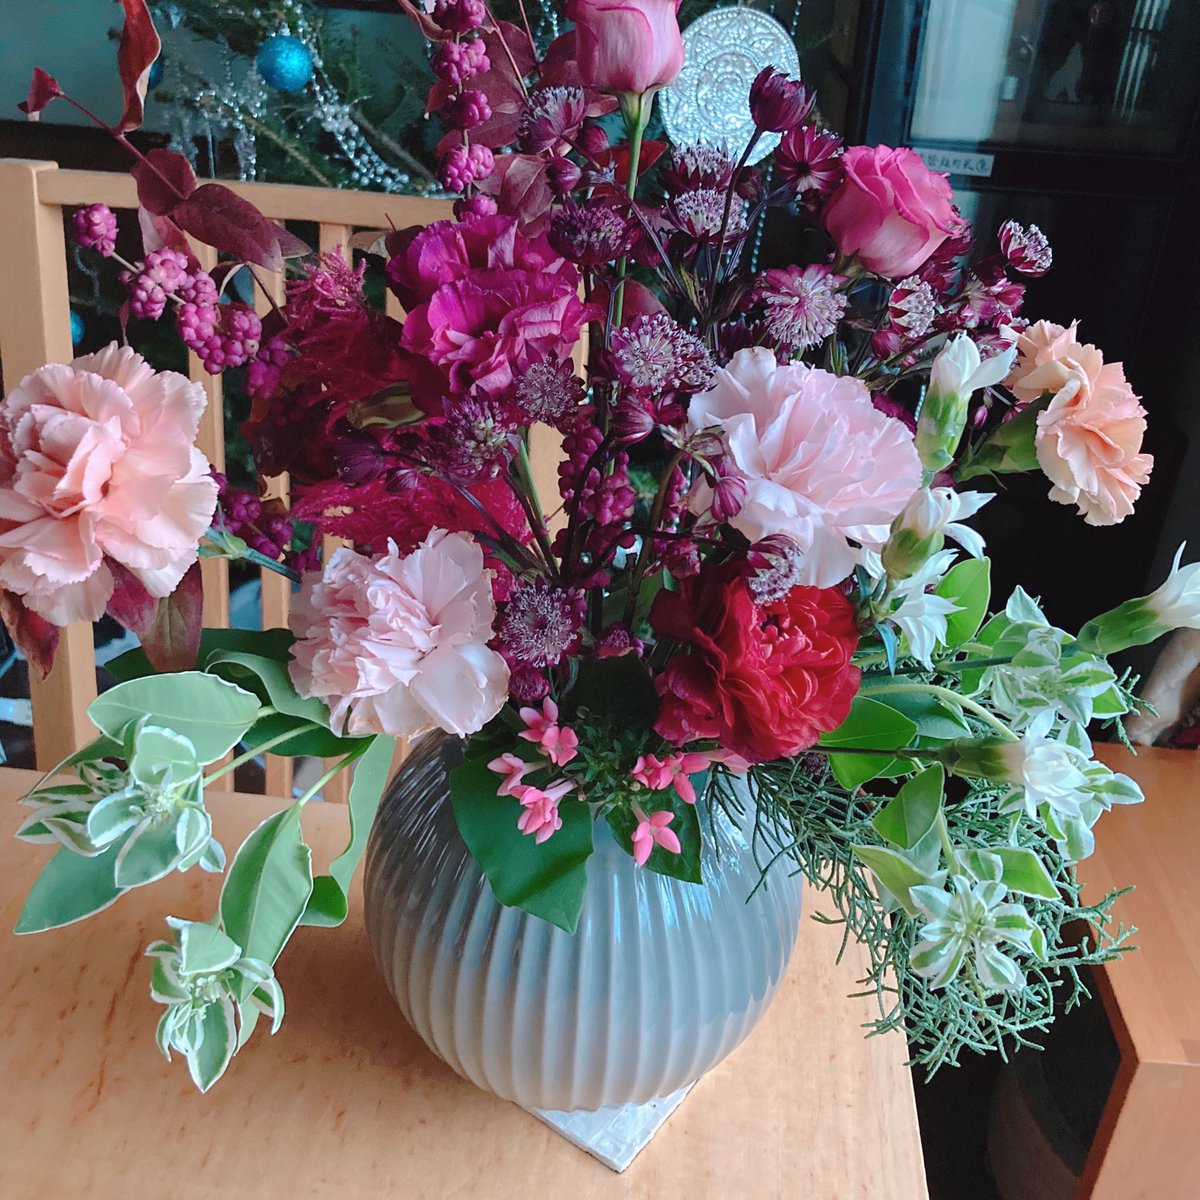 Seria Yuki 新宿小田急エースの日比谷花壇は 広くて選択肢豊富 ３束1000円のお値打ち花を組み合わせて手持ちのと合わせたらまたもや盛り盛りに 花瓶 が足りなくてikeaで買ってきちゃいました このプラン解約したら出番が激減しそうな大きな花瓶だわ